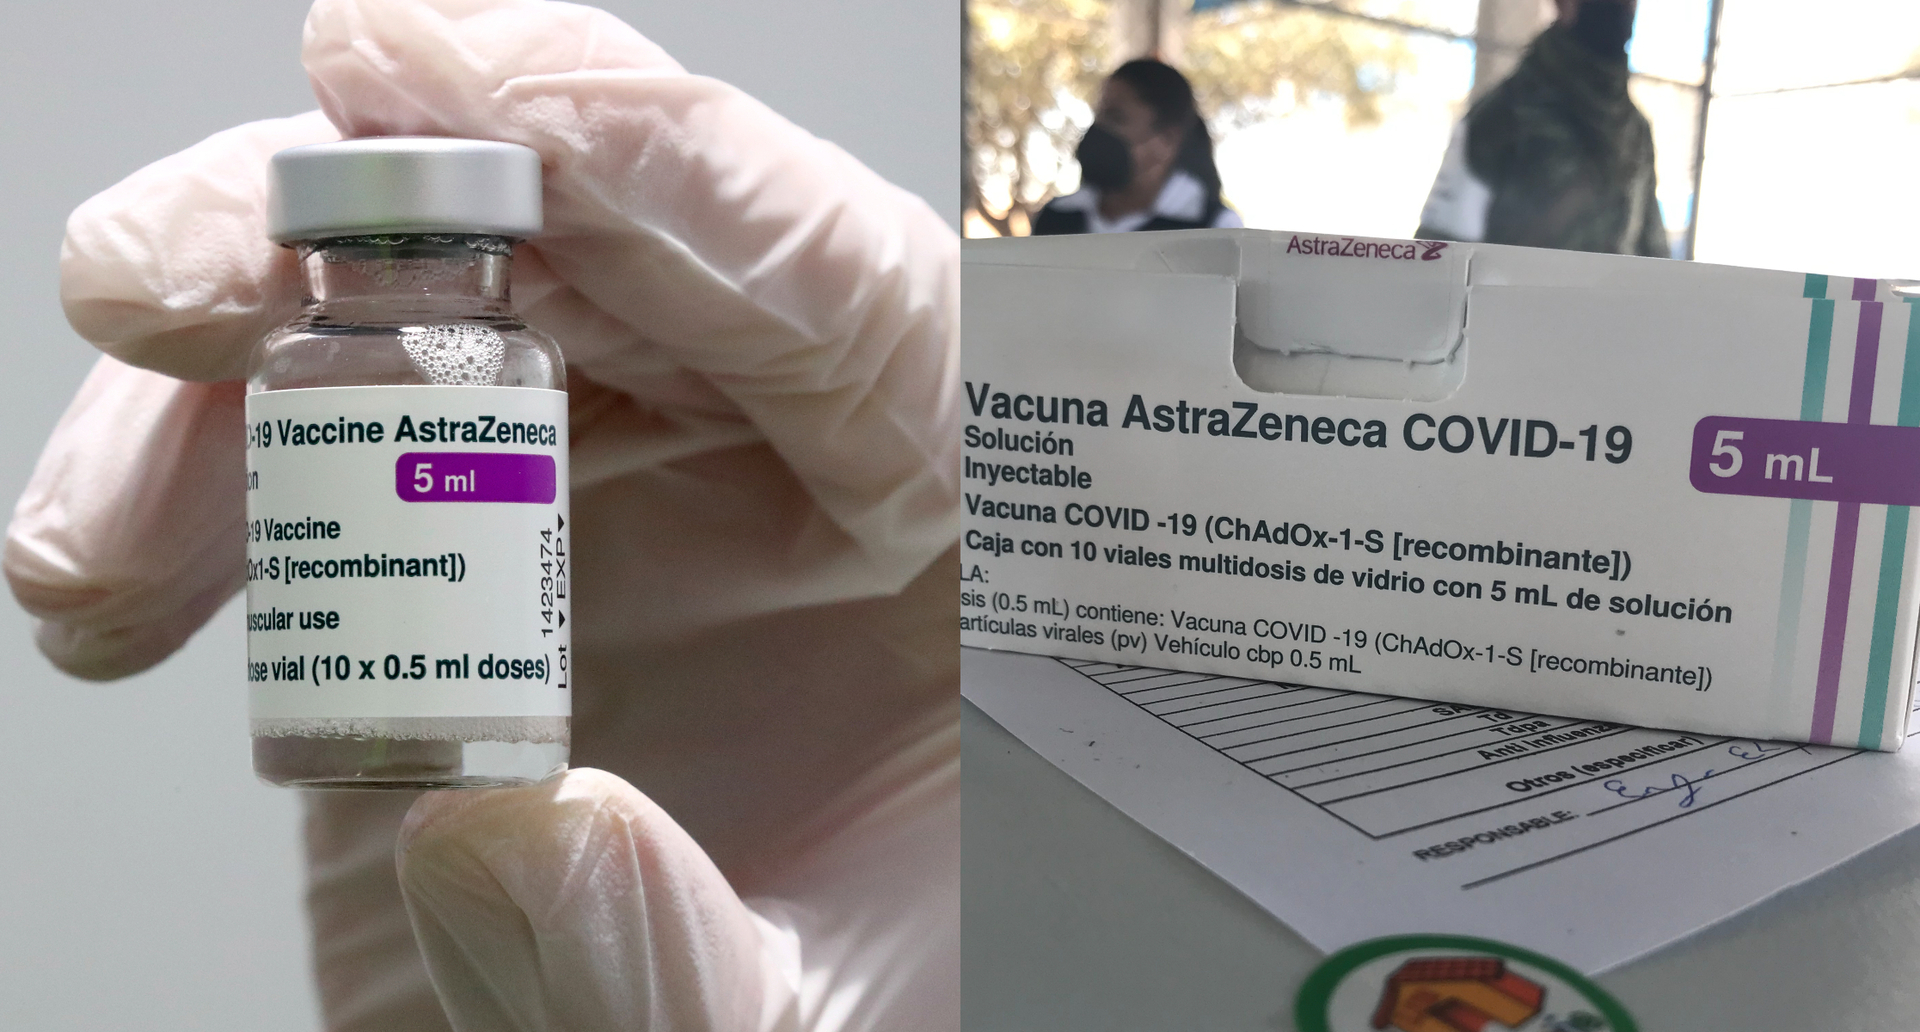 AstraZeneca retirará su vacuna contra covid-19 del mercado